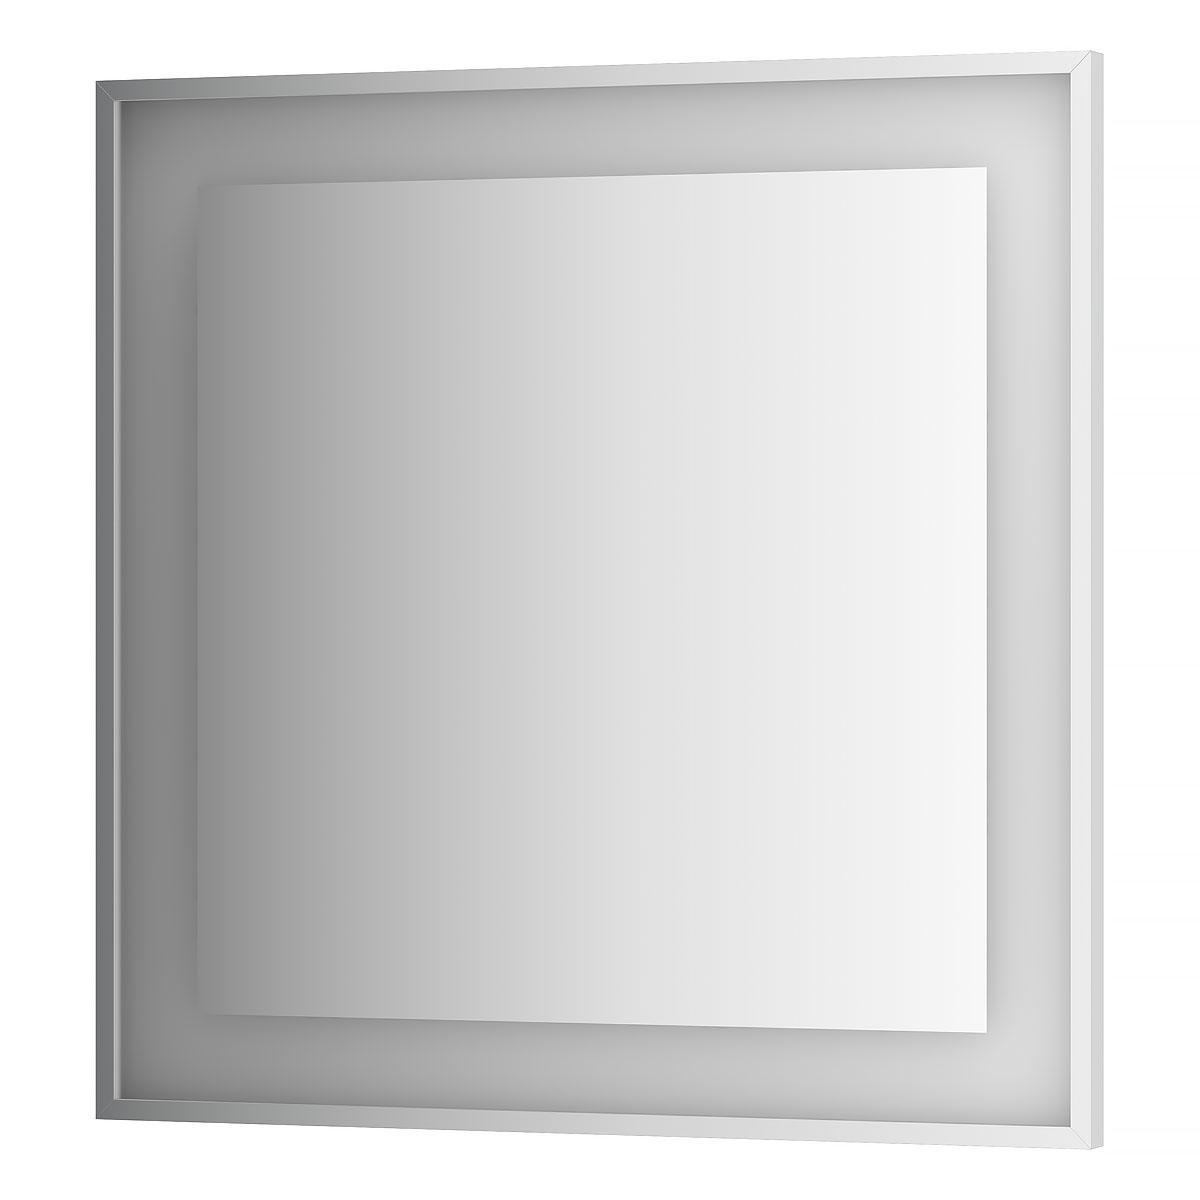 90223486 Зеркало со встроенной подсветкой BY 2211 90x90см LEDSIDE STLM-0138196 EVOFORM